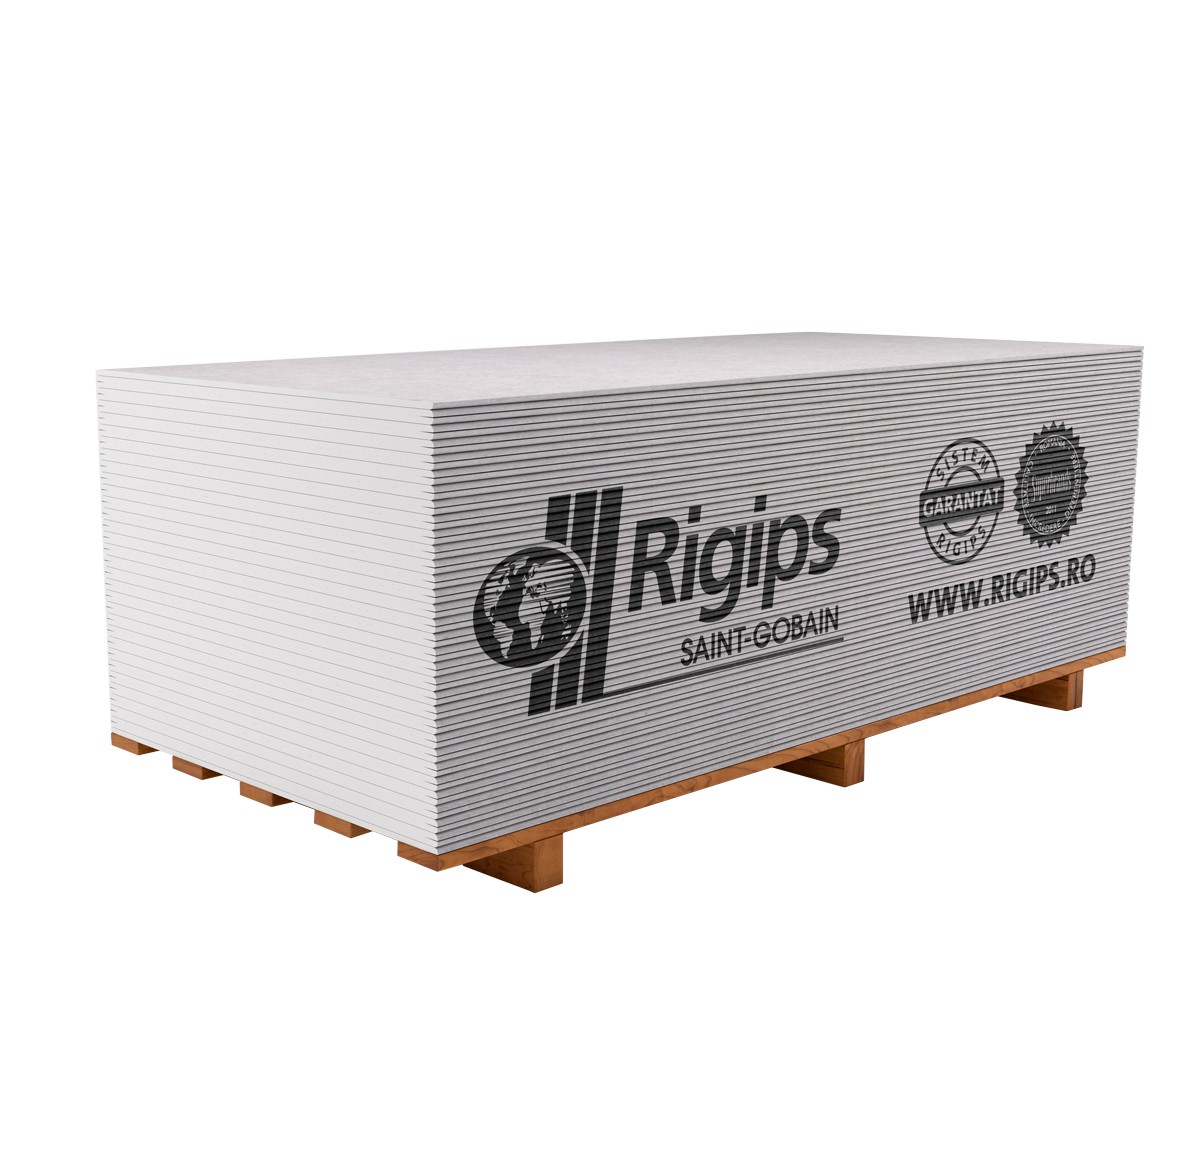 Placi gips carton uzuale - Placa gips carton Rigips RB 9.5 x 1200 x 2600 mm, https:maxbau.ro